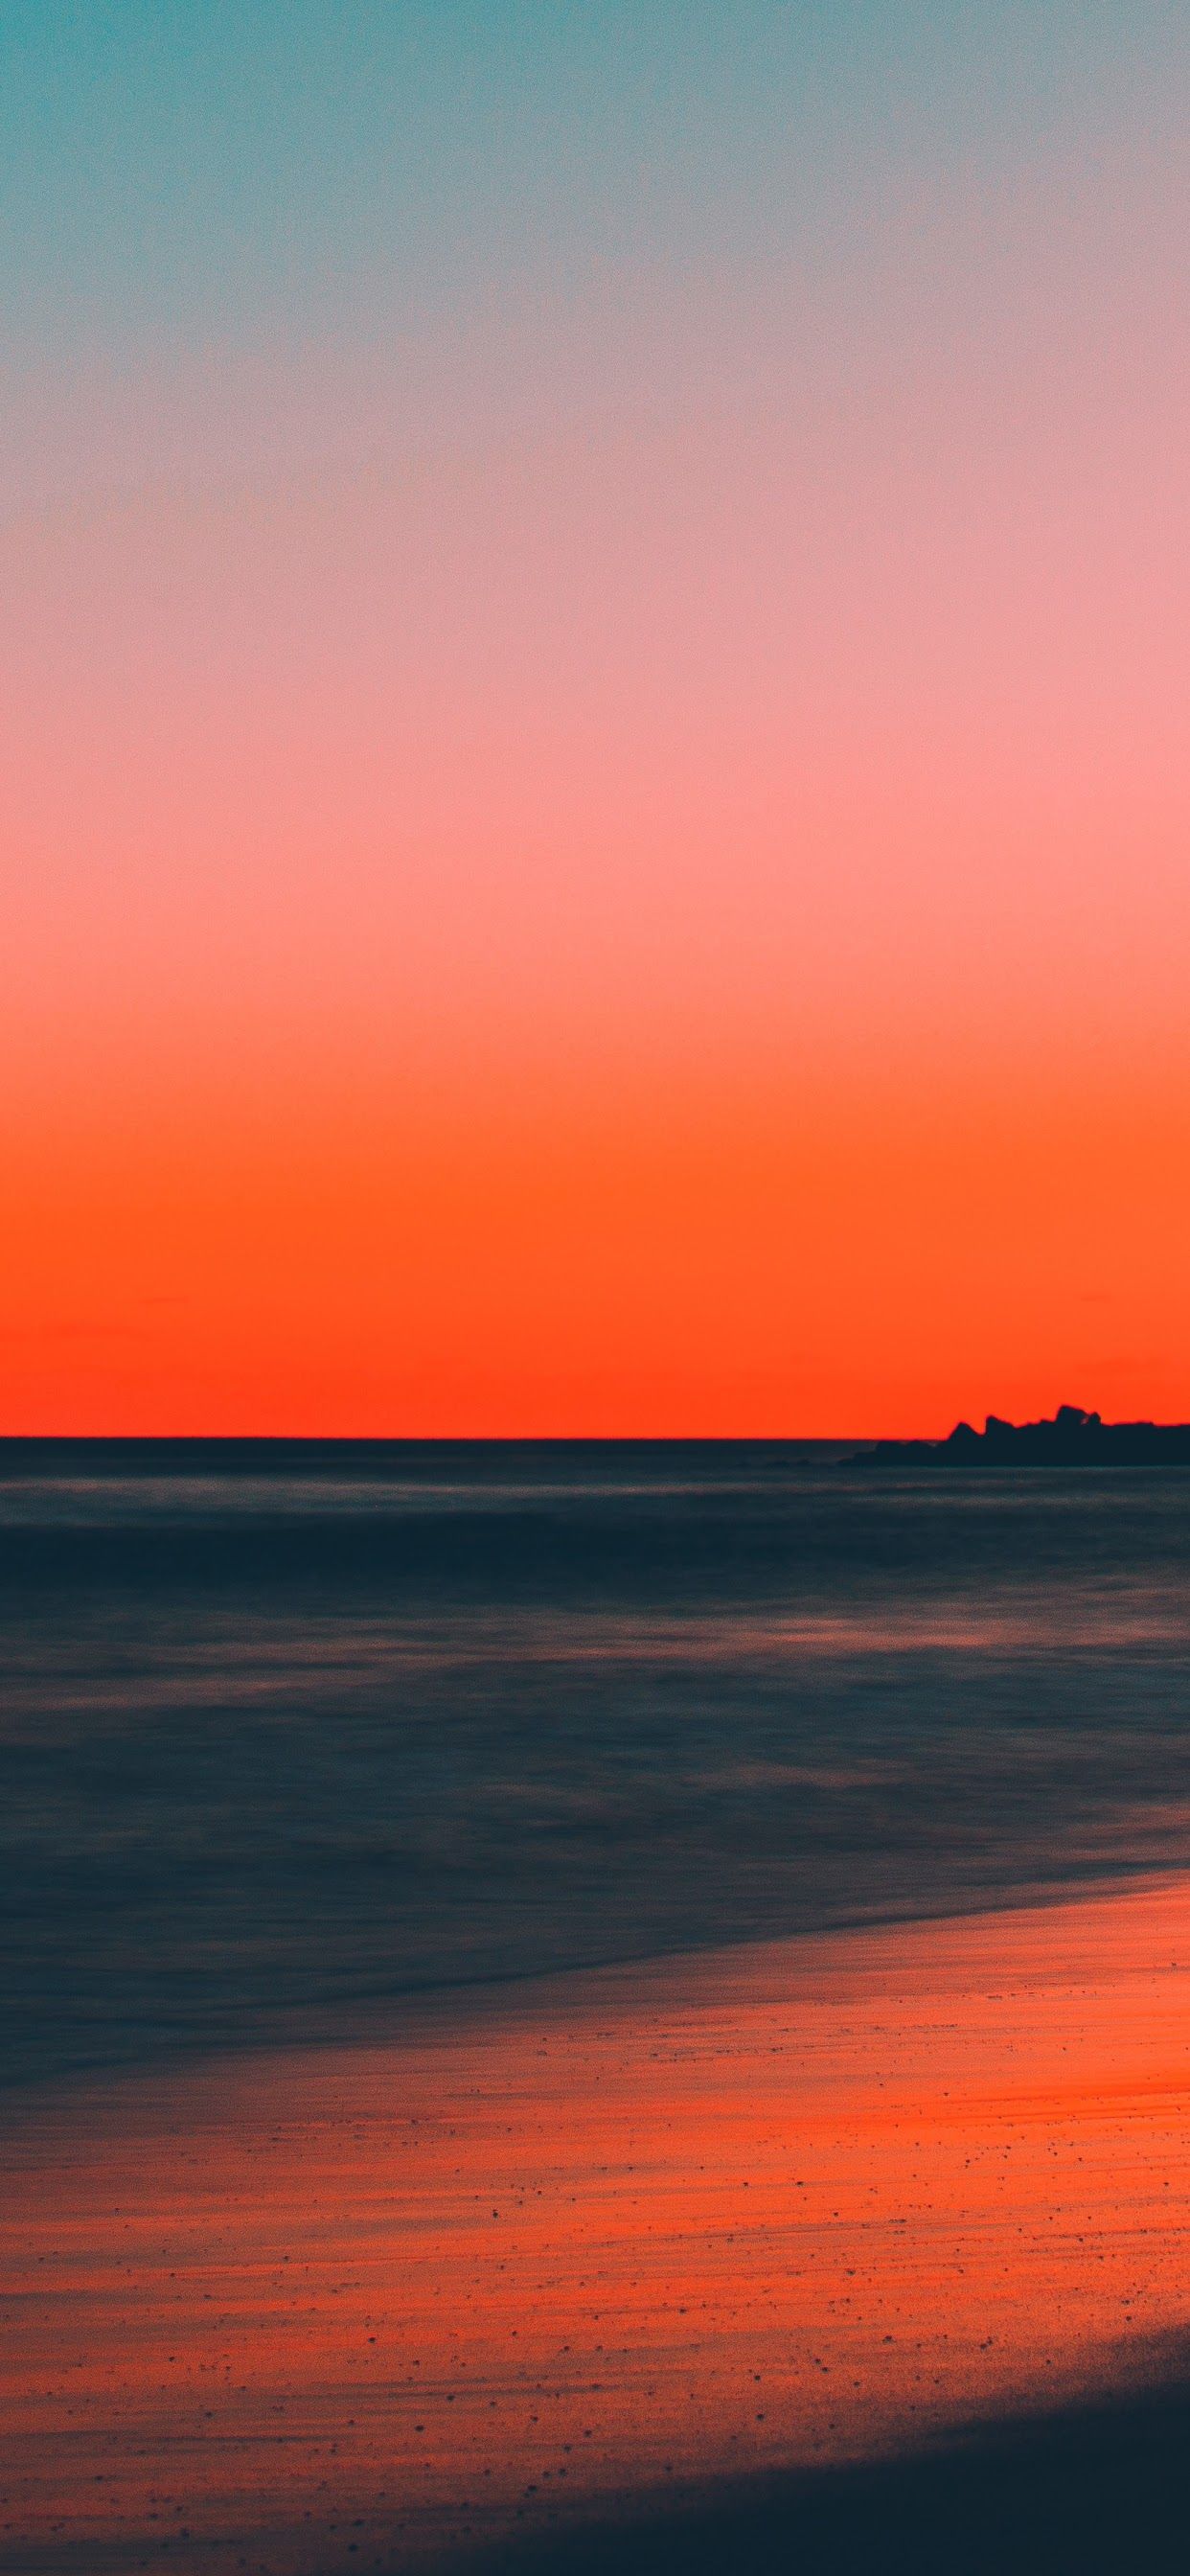 Sunset Beach Sea Horizon Scenery 8K Wallpaper